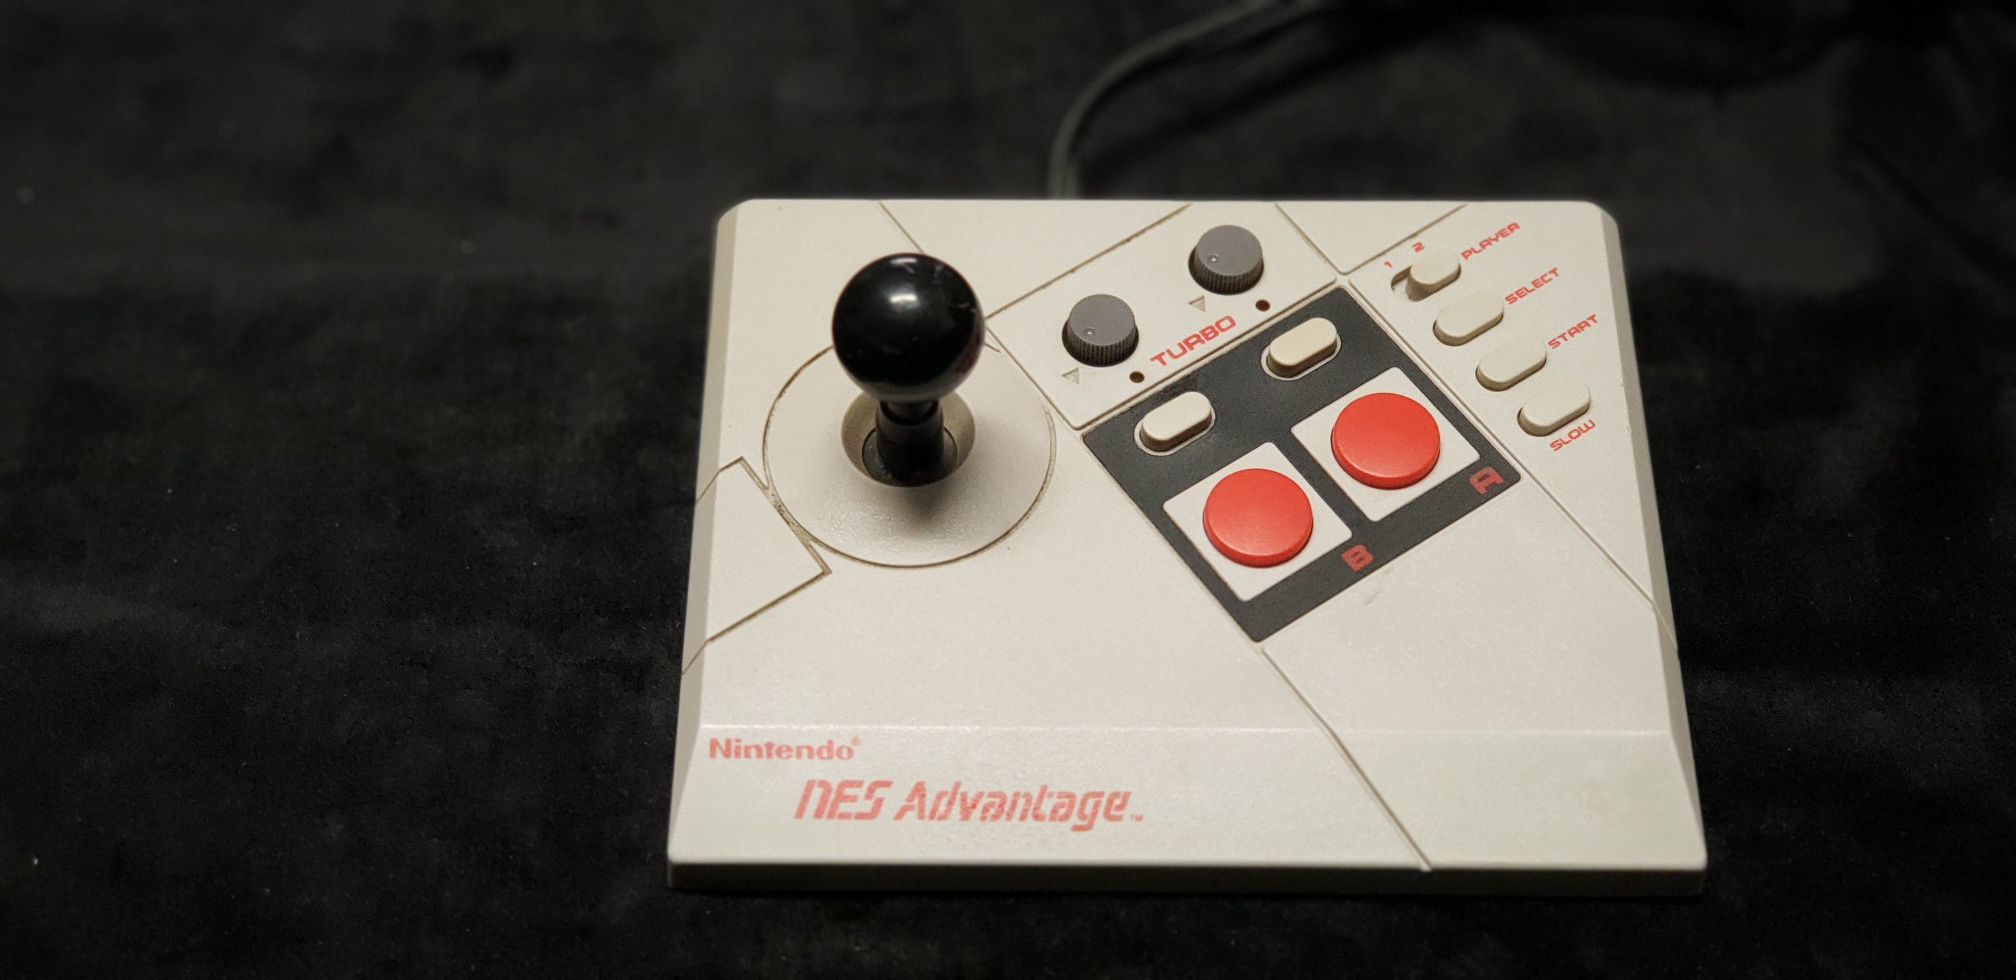 NES Advantage Joystick